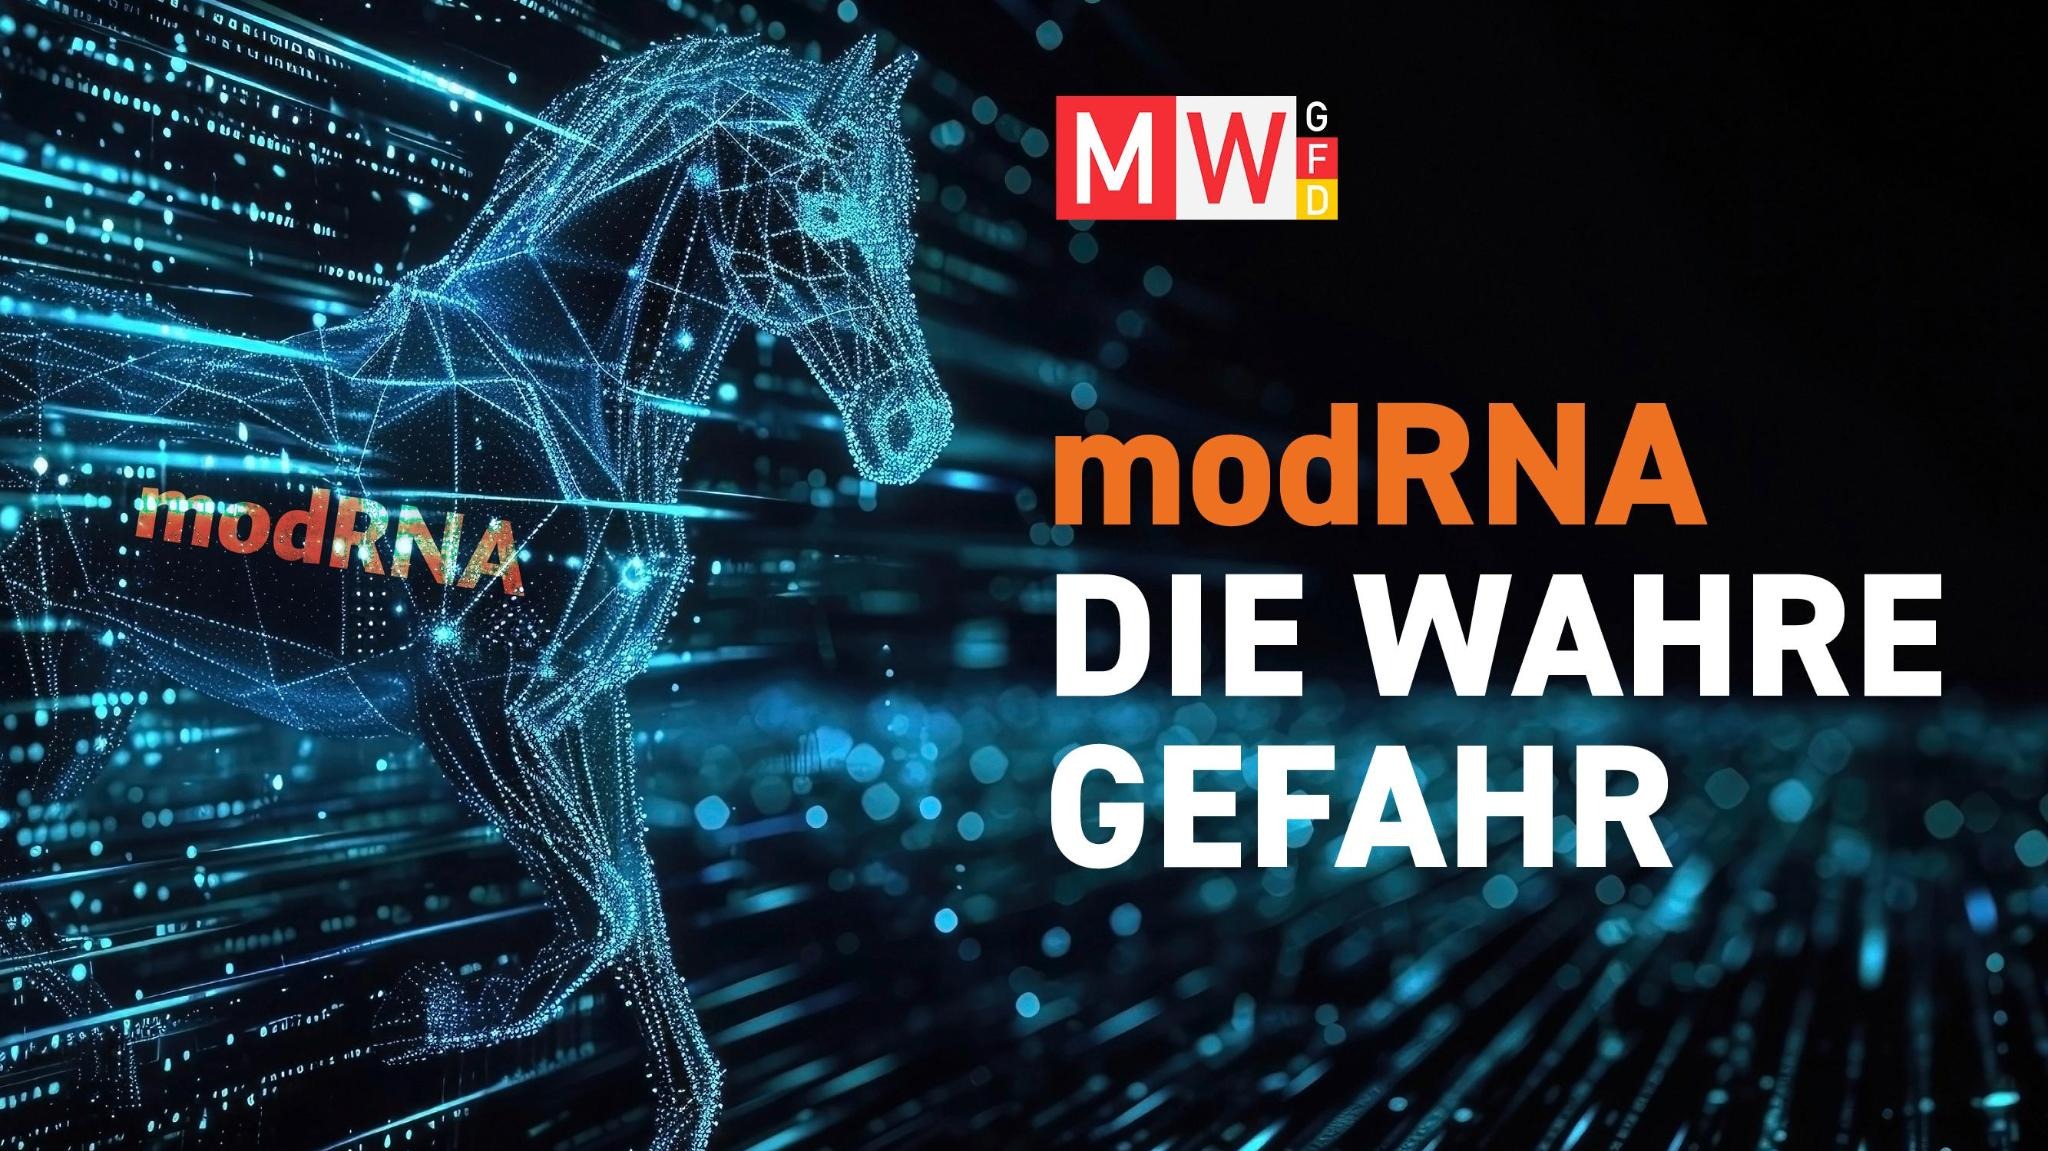 modRNA – die wahre Gefahr - MWGFD